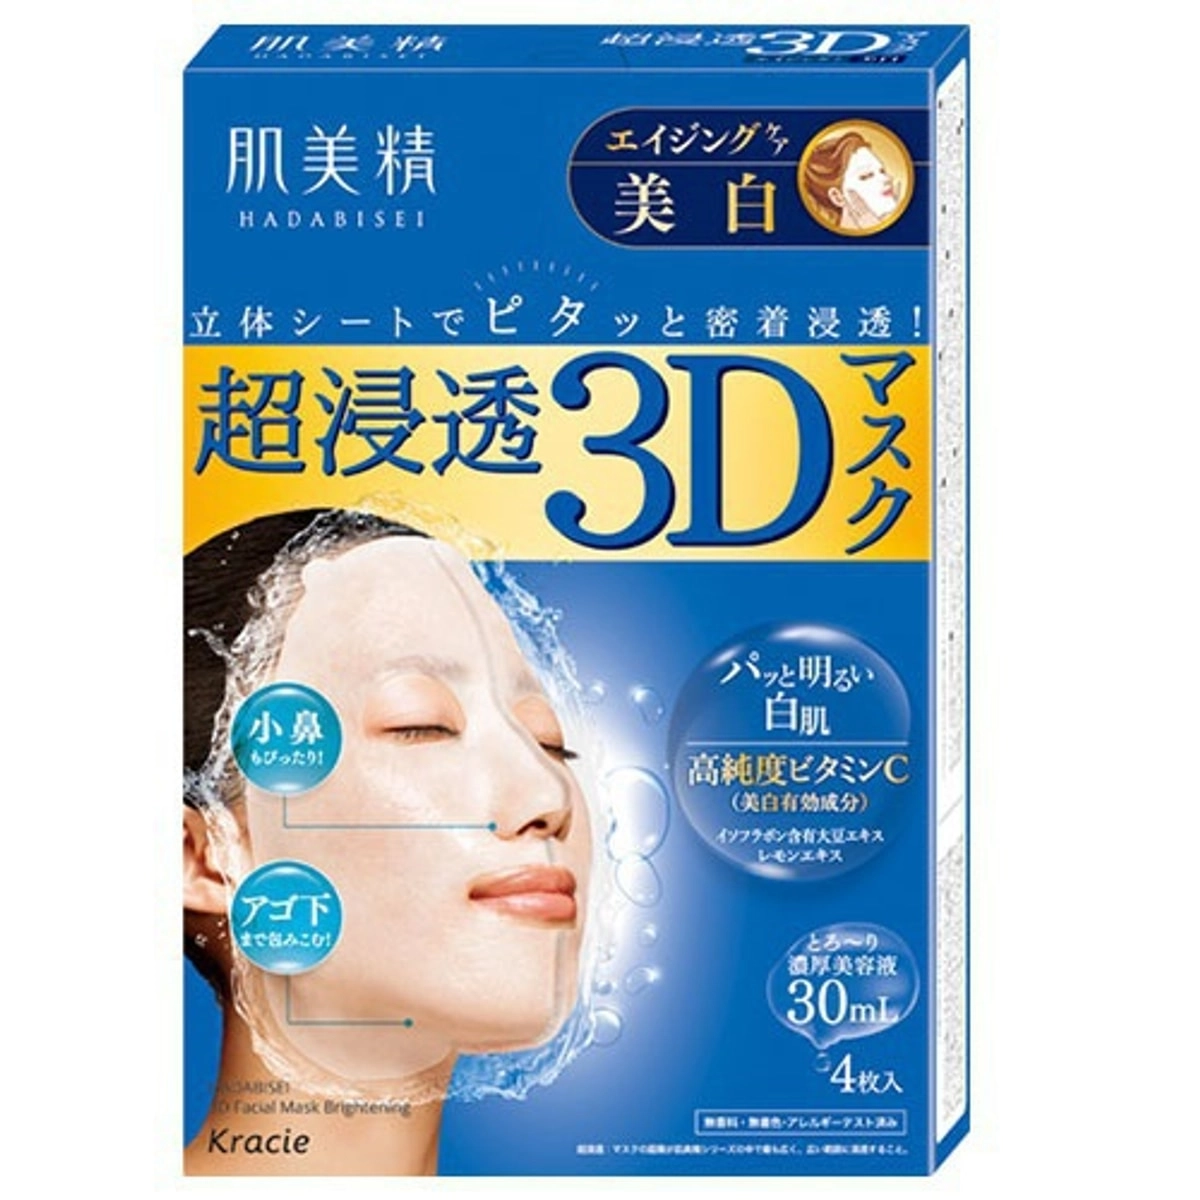 3D-маска для выравнивания тона кожи лица с витамином С - Kracie Hadabisei 3D Fit Mask, 4 шт - фото N1